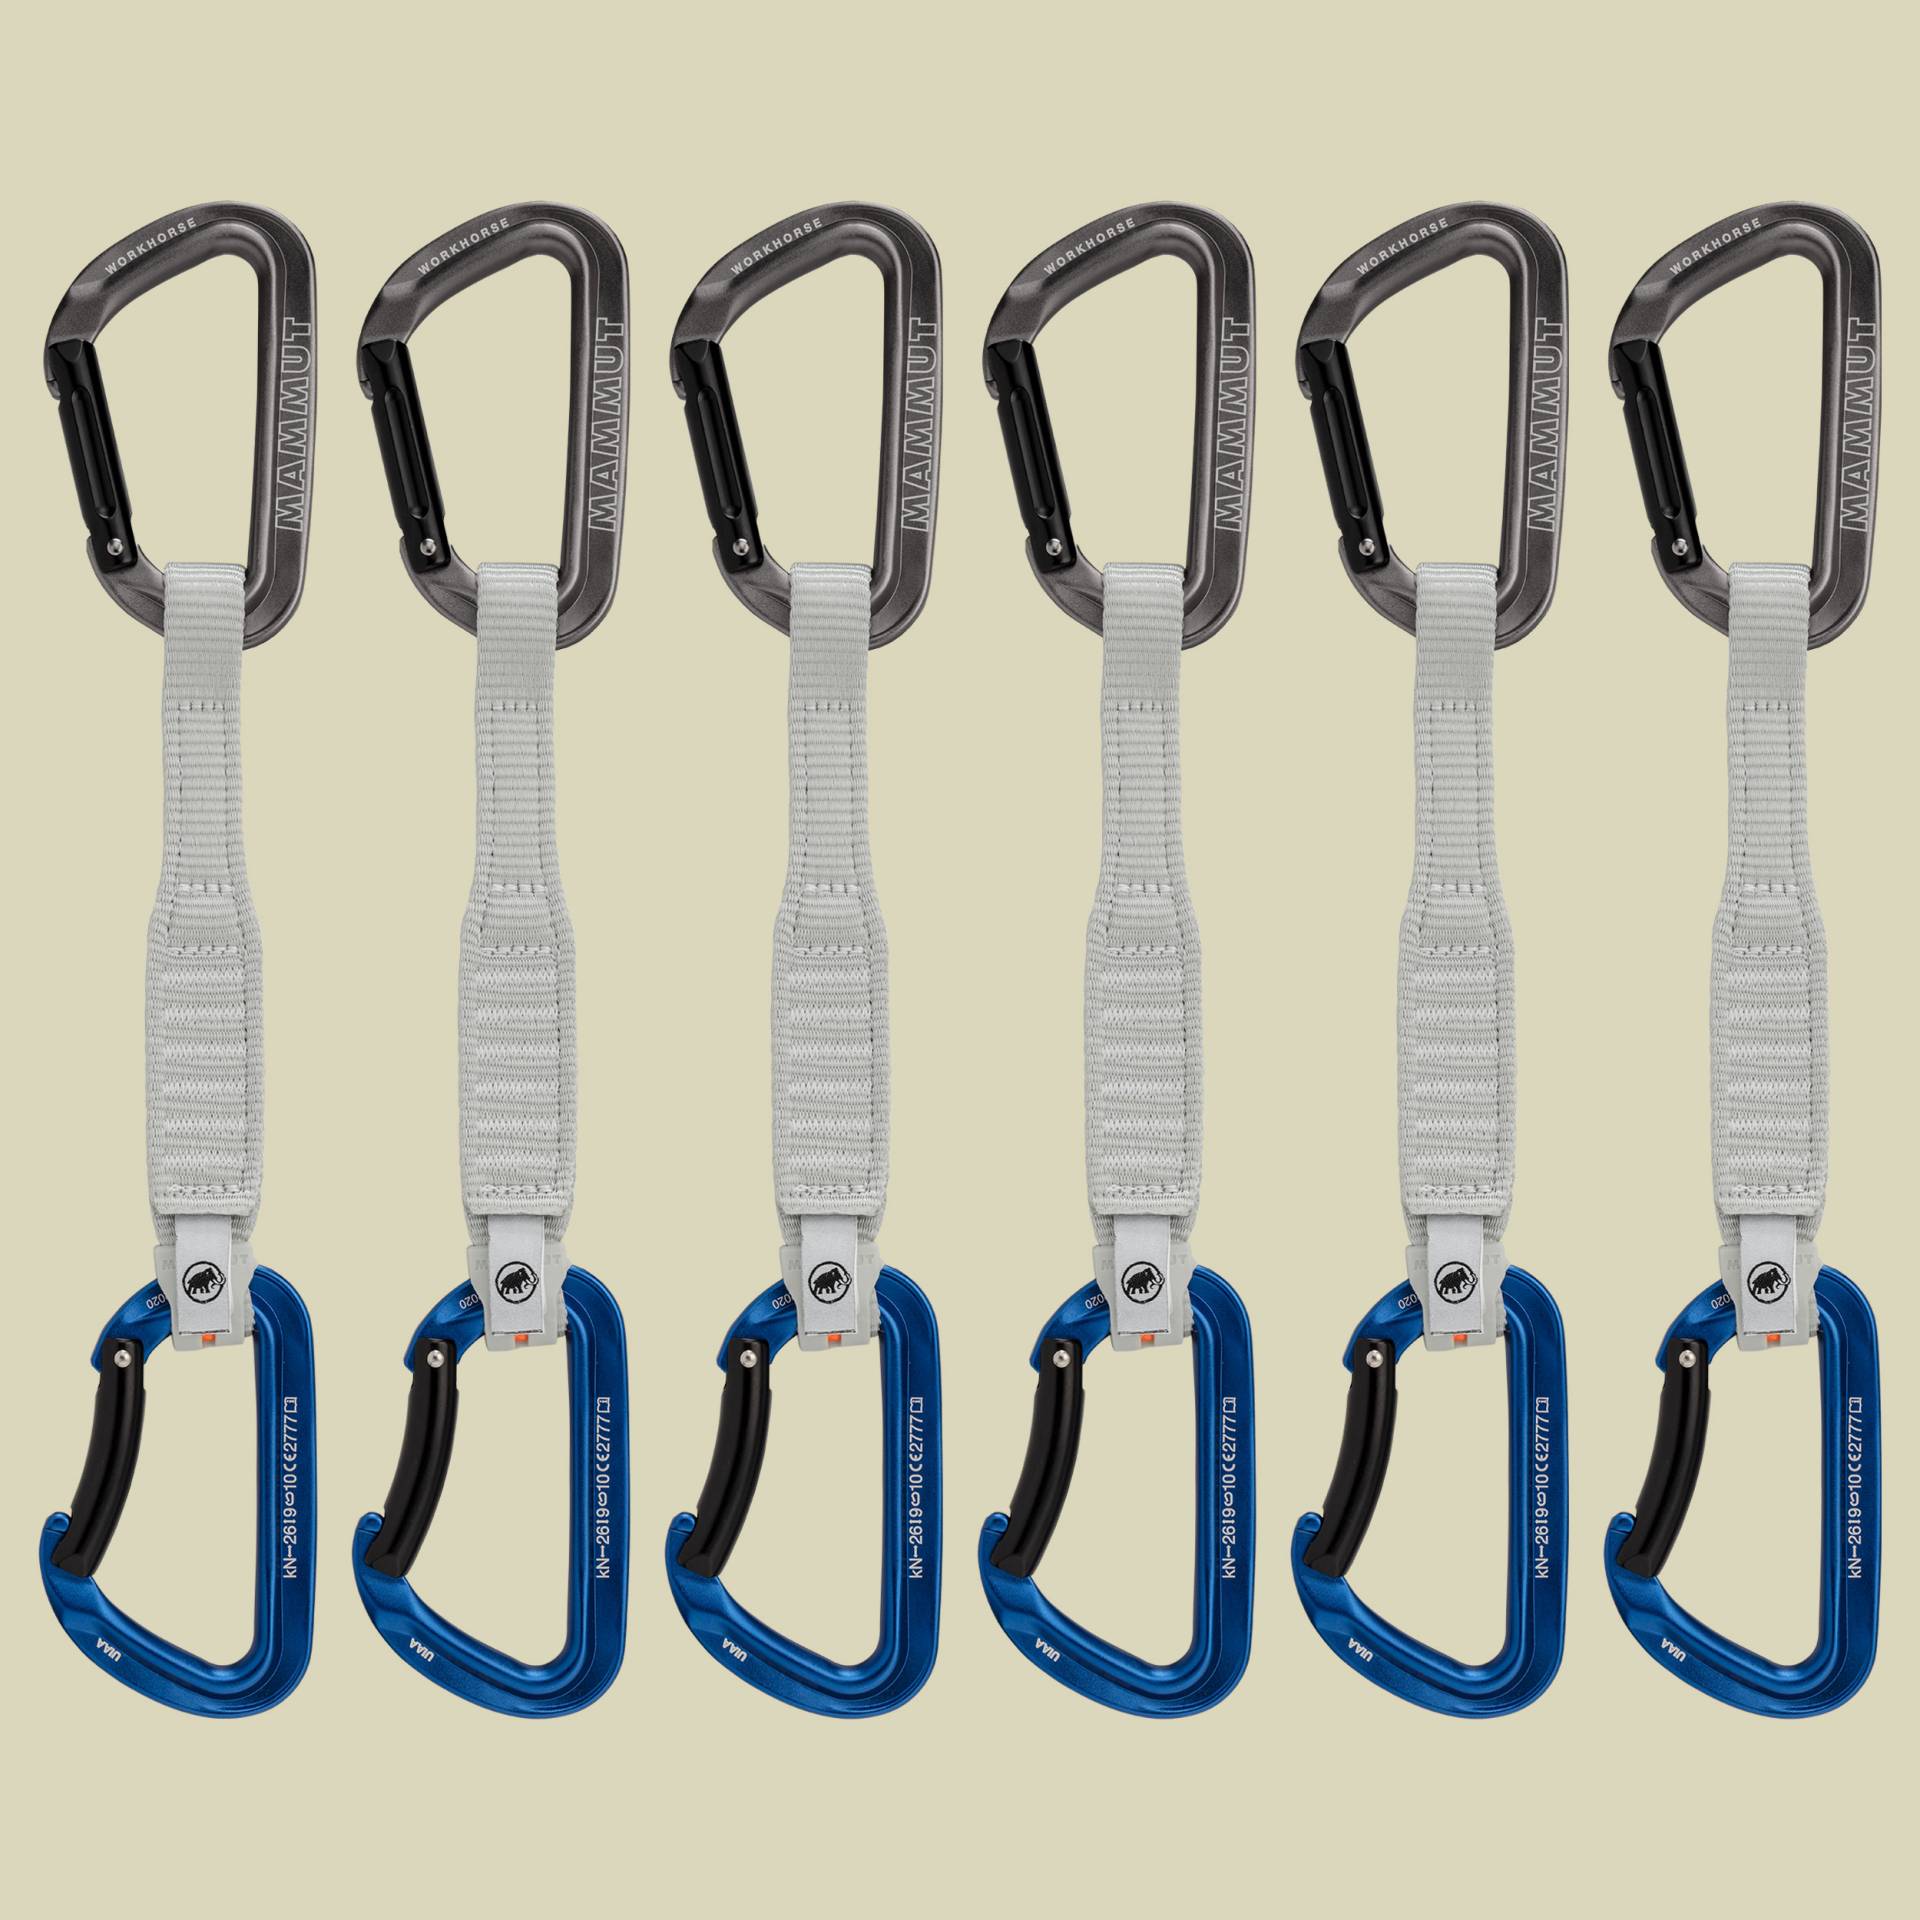 Workhorse Keylock 17 cm 6-Pack Quickdraws Größe 17 cm Verschluss Straight Gate/Bent Gate Key Lock, Farbe grey-blue von mammut